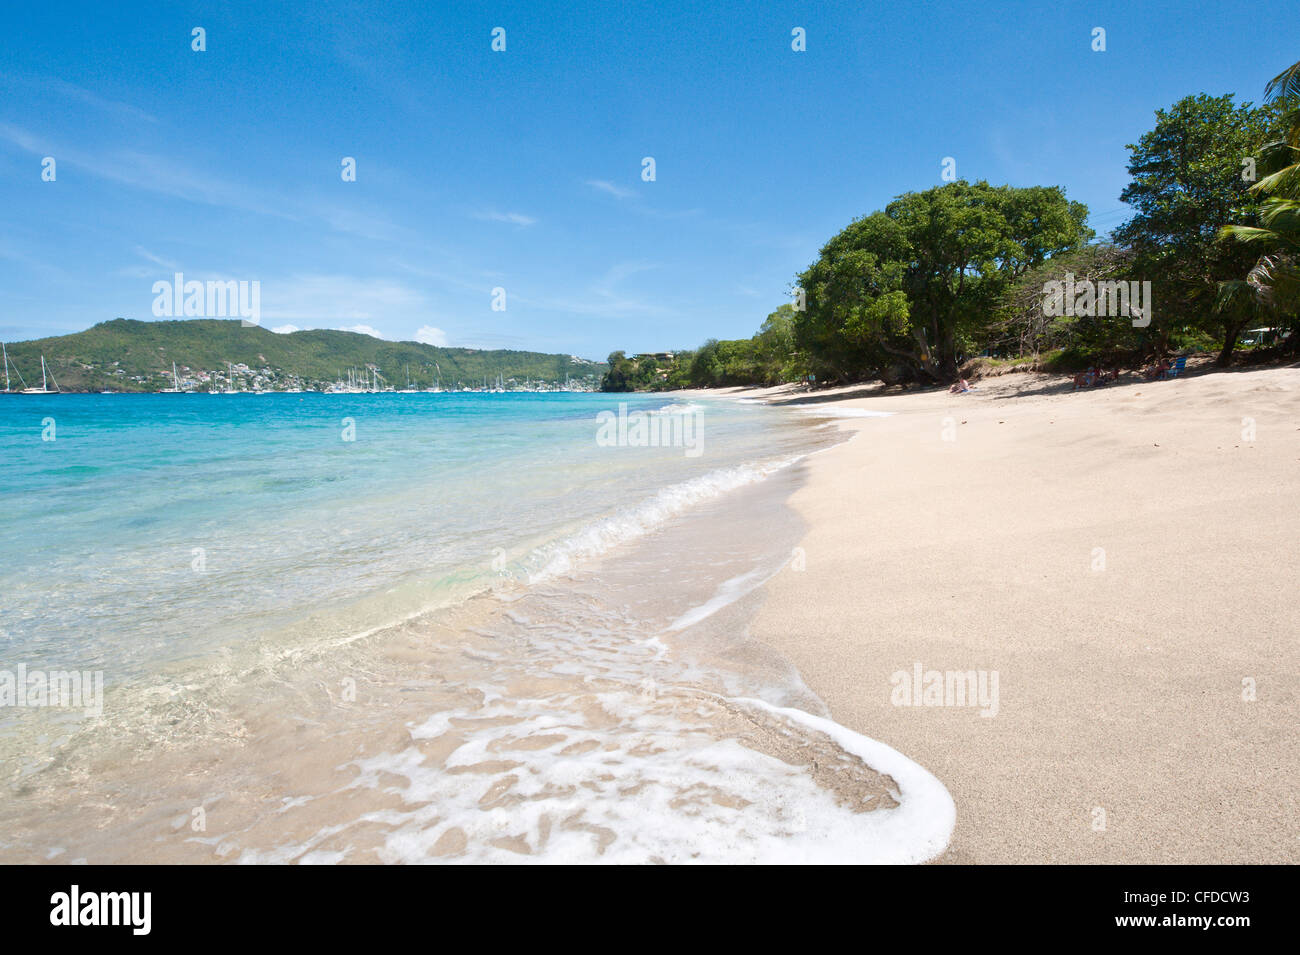 Partie inférieure de la baie, Bequia, St Vincent et les Grenadines, îles du Vent, Antilles, Caraïbes, Amérique Centrale Banque D'Images